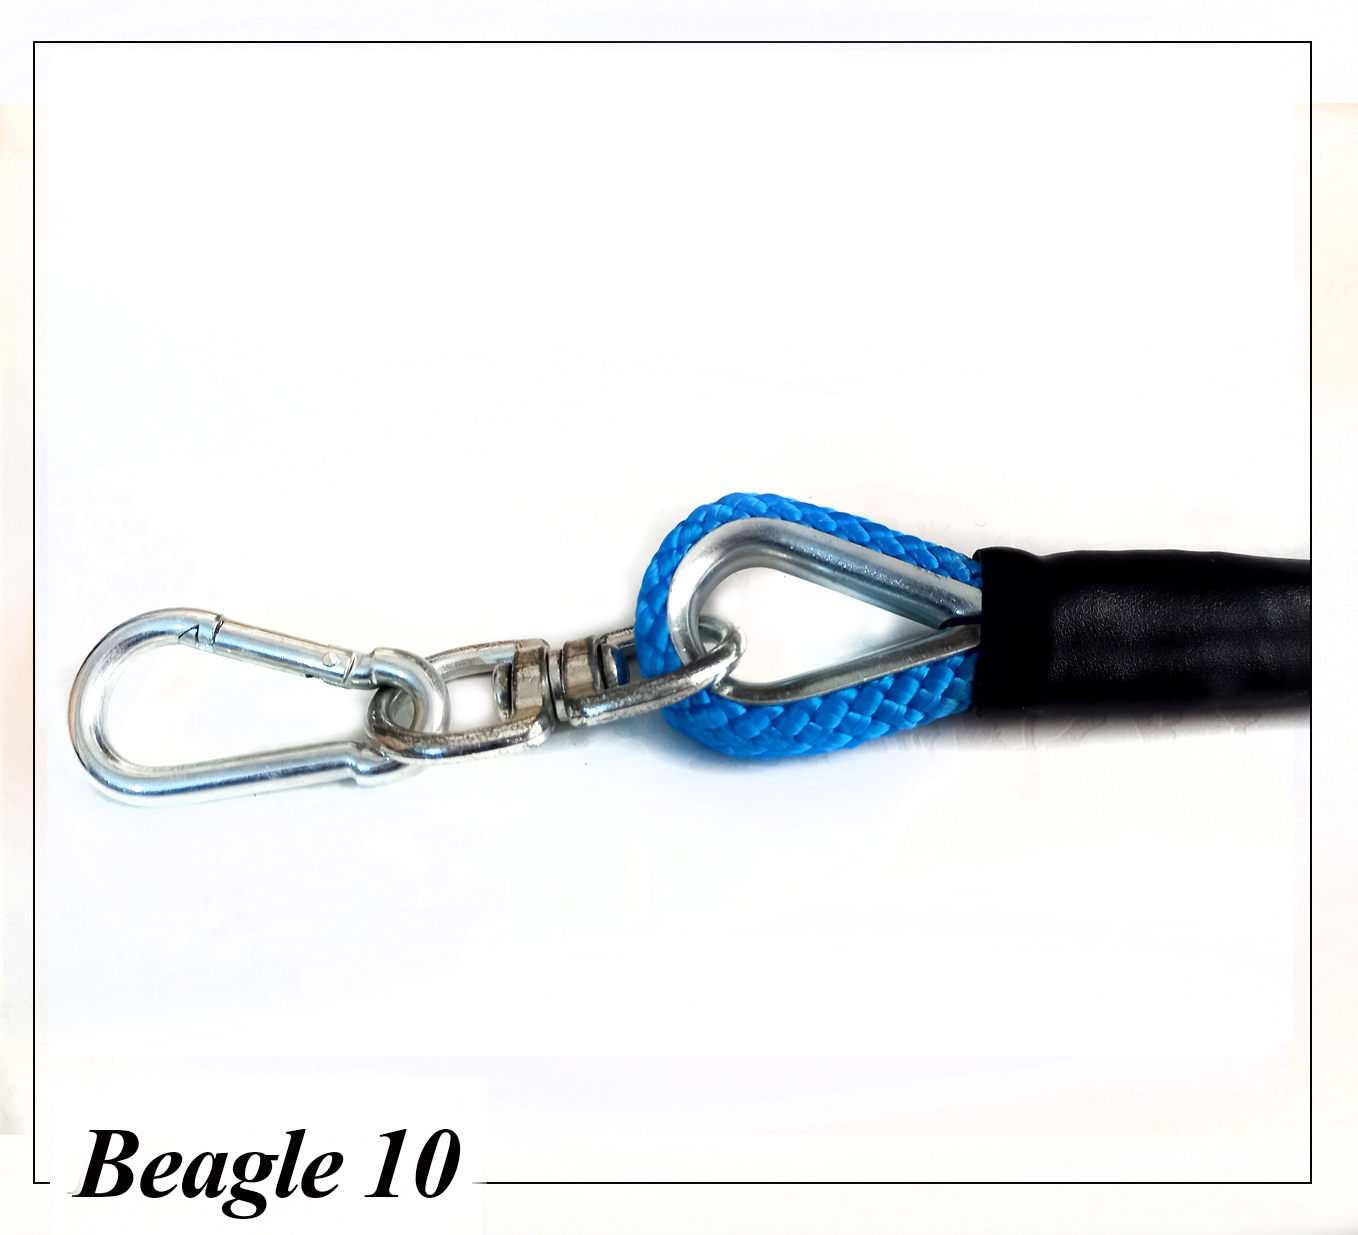 بیگل 10 تهیه شده از طناب پاراکورد با دوام و انعطاف پذیری بالا مناسب سگهای سبک وزن.